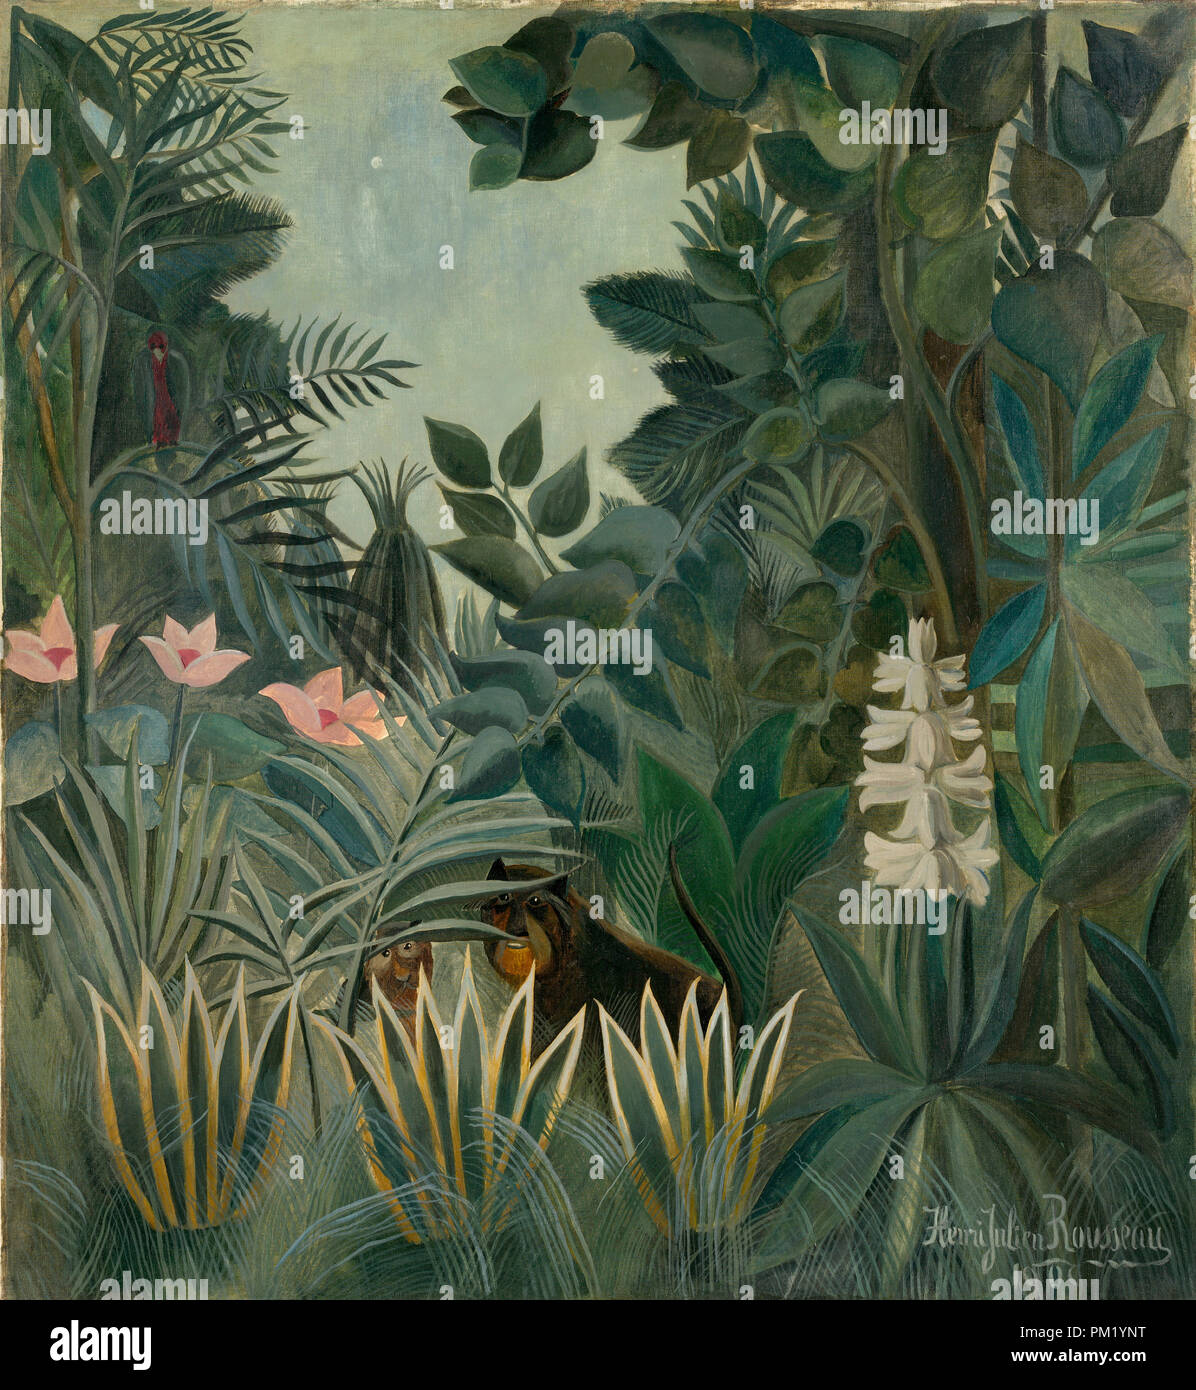 La Jungle équatoriale. En date du : 1909. Dimensions : hors tout : 140,6 x 129,5 cm (55 3/8 x 51 in.) : 151,8 x 141,3 encadrée x 6,9 cm (59 3/4 x 55 5/8 x 2 2/13 in.). Médium : Huile sur toile. Musée : National Gallery of Art, Washington DC. Auteur : Henri Rousseau. Banque D'Images